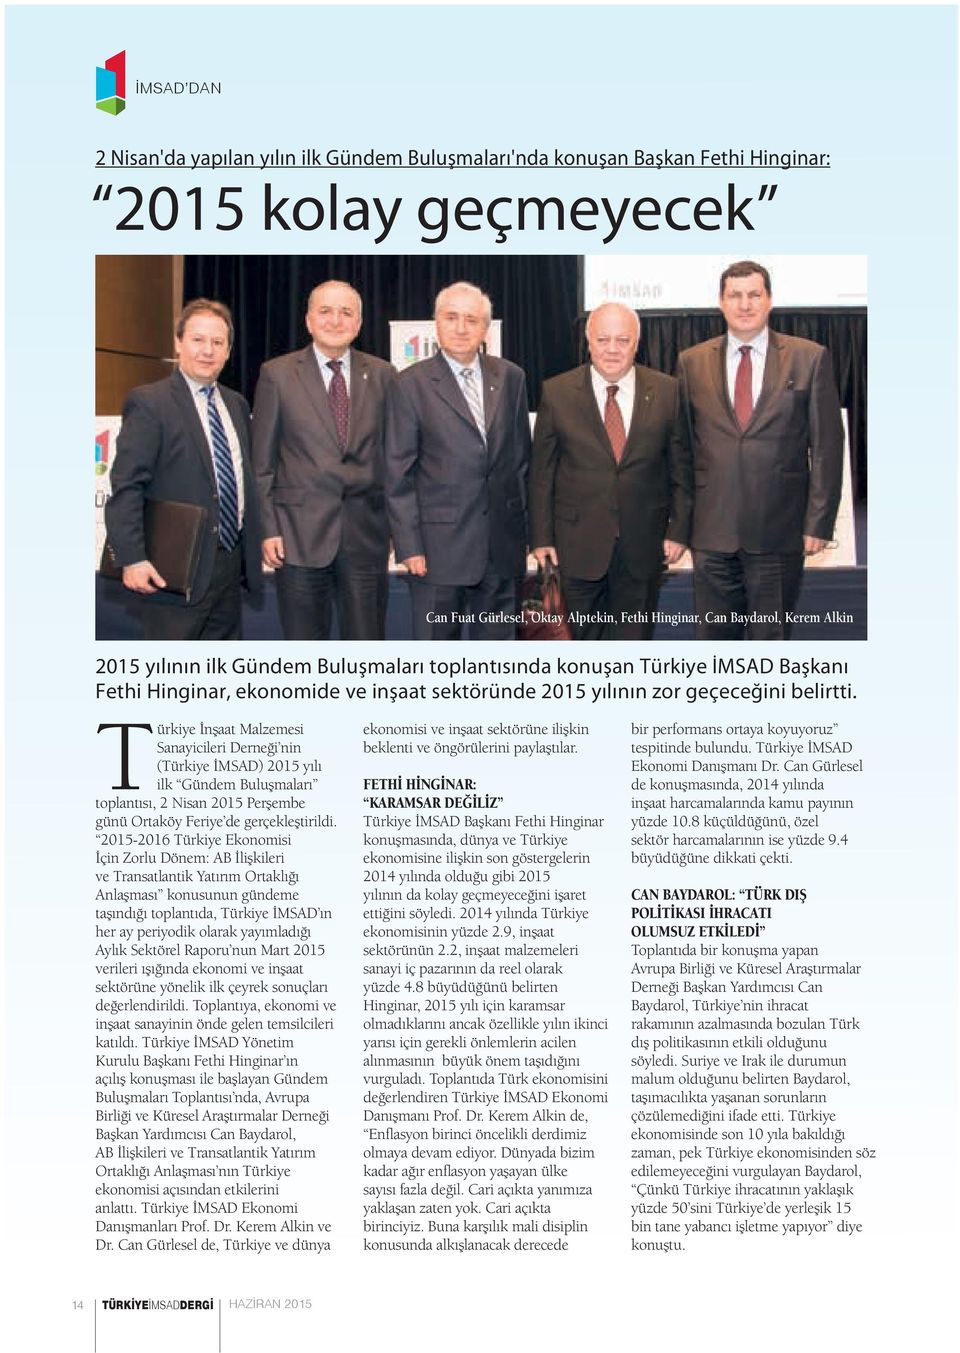 Türkiye İnşaat Malzemesi Sanayicileri Derneği nin (Türkiye İMSAD) 2015 yılı ilk Gündem Buluşmaları toplantısı, 2 Nisan 2015 Perşembe günü Ortaköy Feriye de gerçekleştirildi.